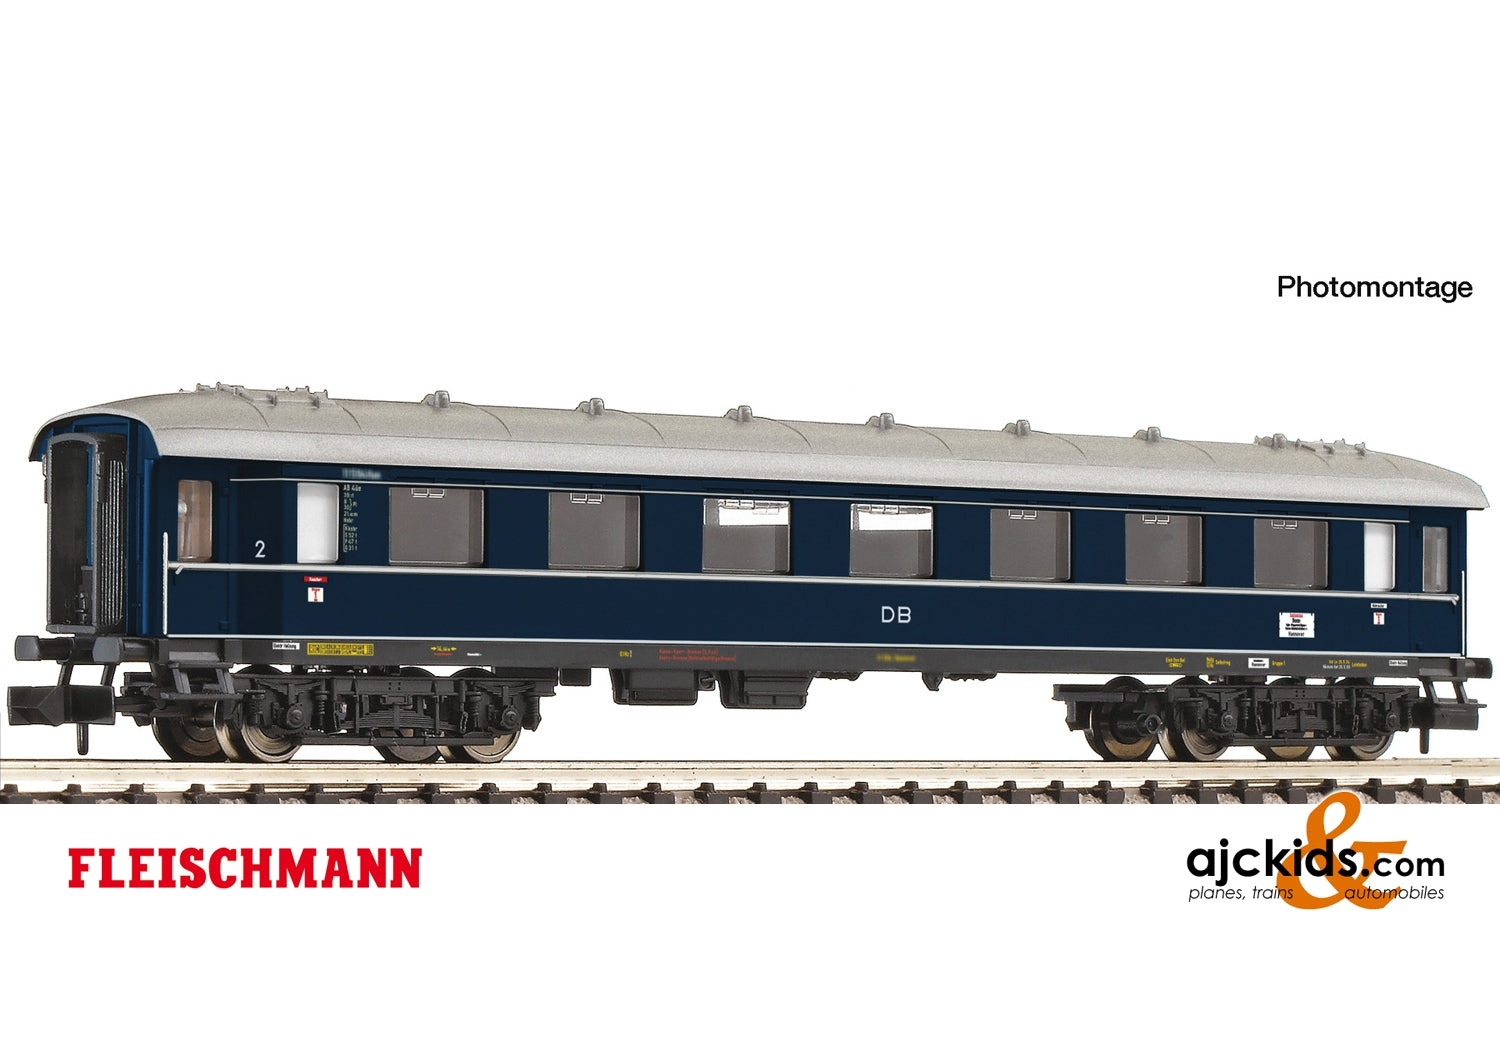 Fleischmann 863103 - 2nd class express train coach